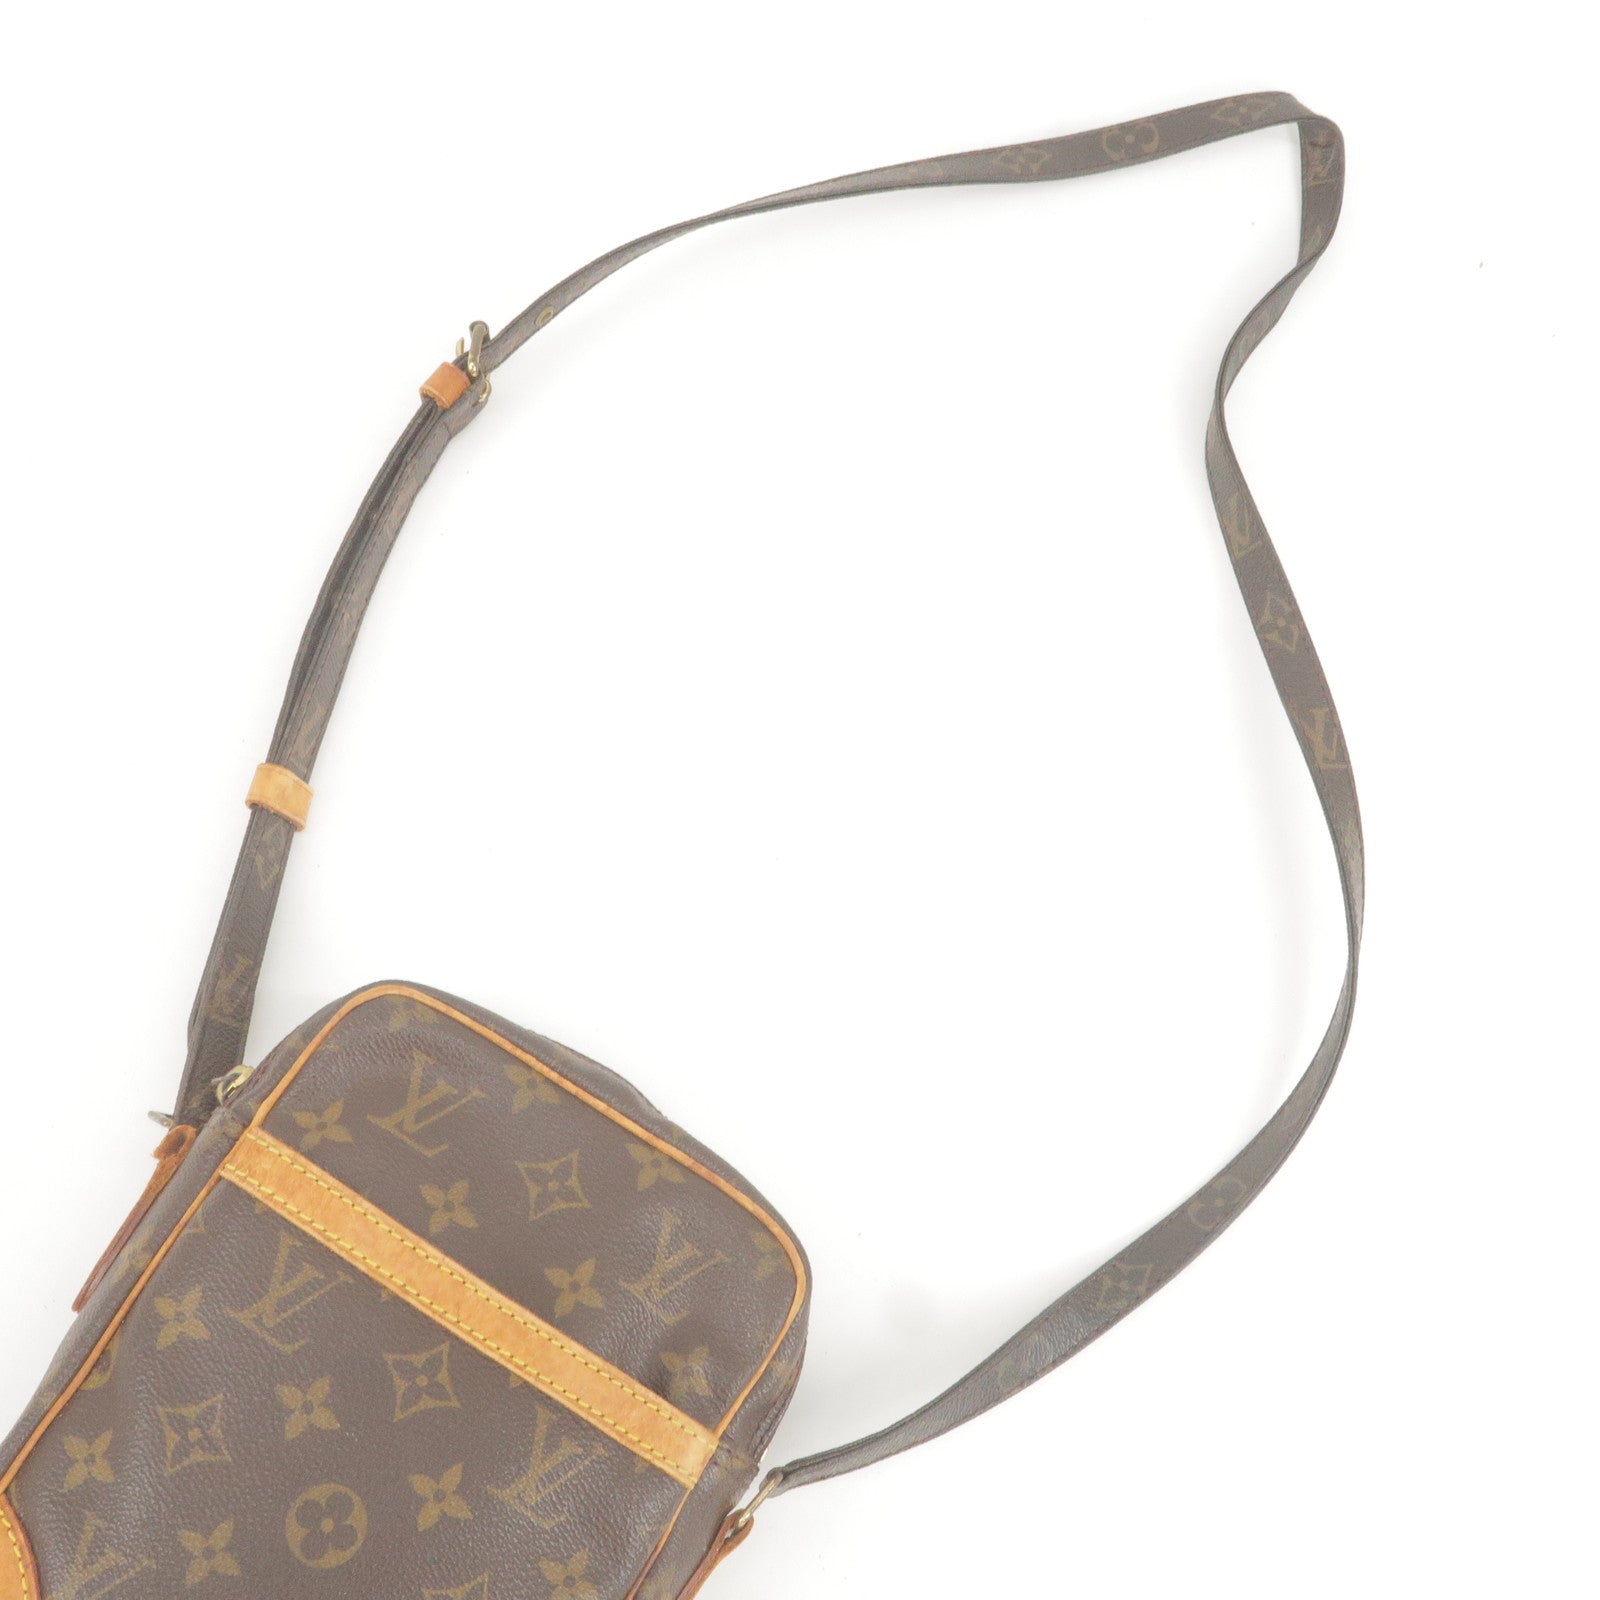 Auth Louis Vuitton Monogram Danube Shoulder Bag Crossbody Bag M45266 Used